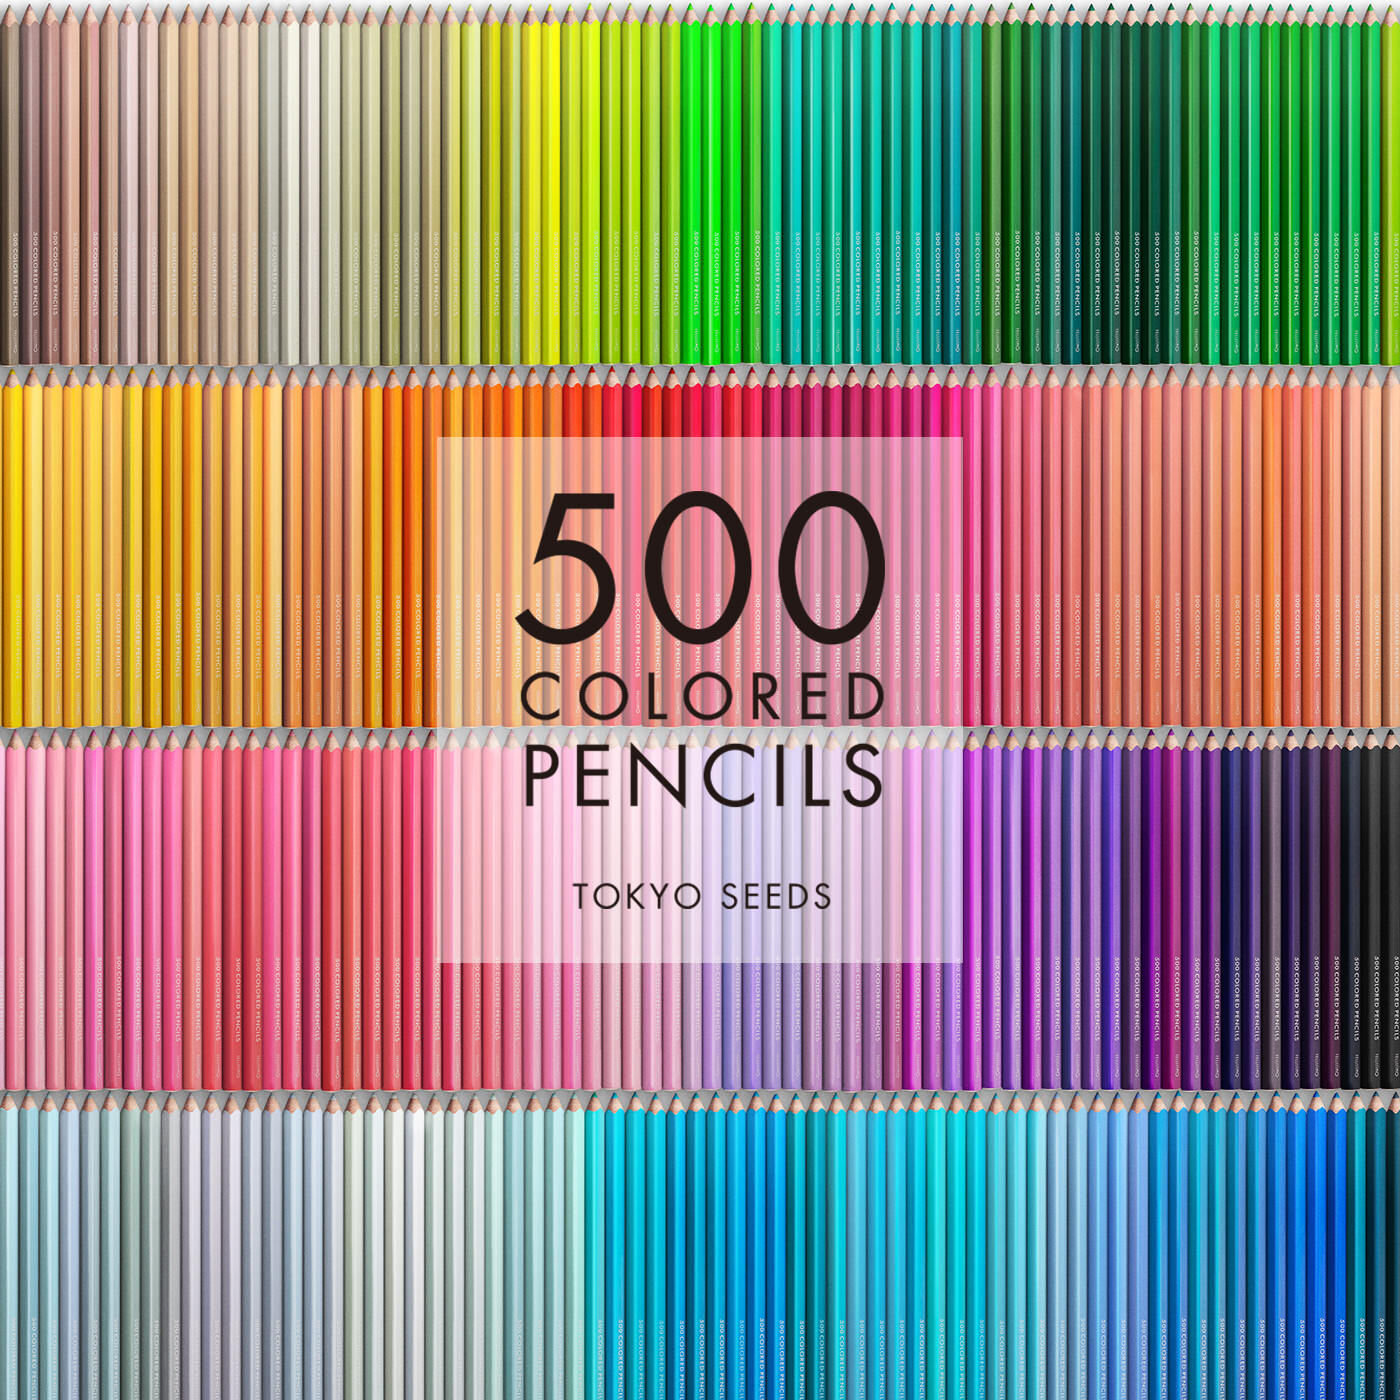 Real Stock|【103/500 STUDIO SUNLIGHT】500色の色えんぴつ TOKYO SEEDS|1992年、世界初の「500色」という膨大な色数の色えんぴつが誕生して以来、その販売数は発売当初から合わせると、世界55ヵ国10万セット以上。今回、メイド・イン・ジャパンにこだわり、すべてが新しく生まれ変わって登場しました。